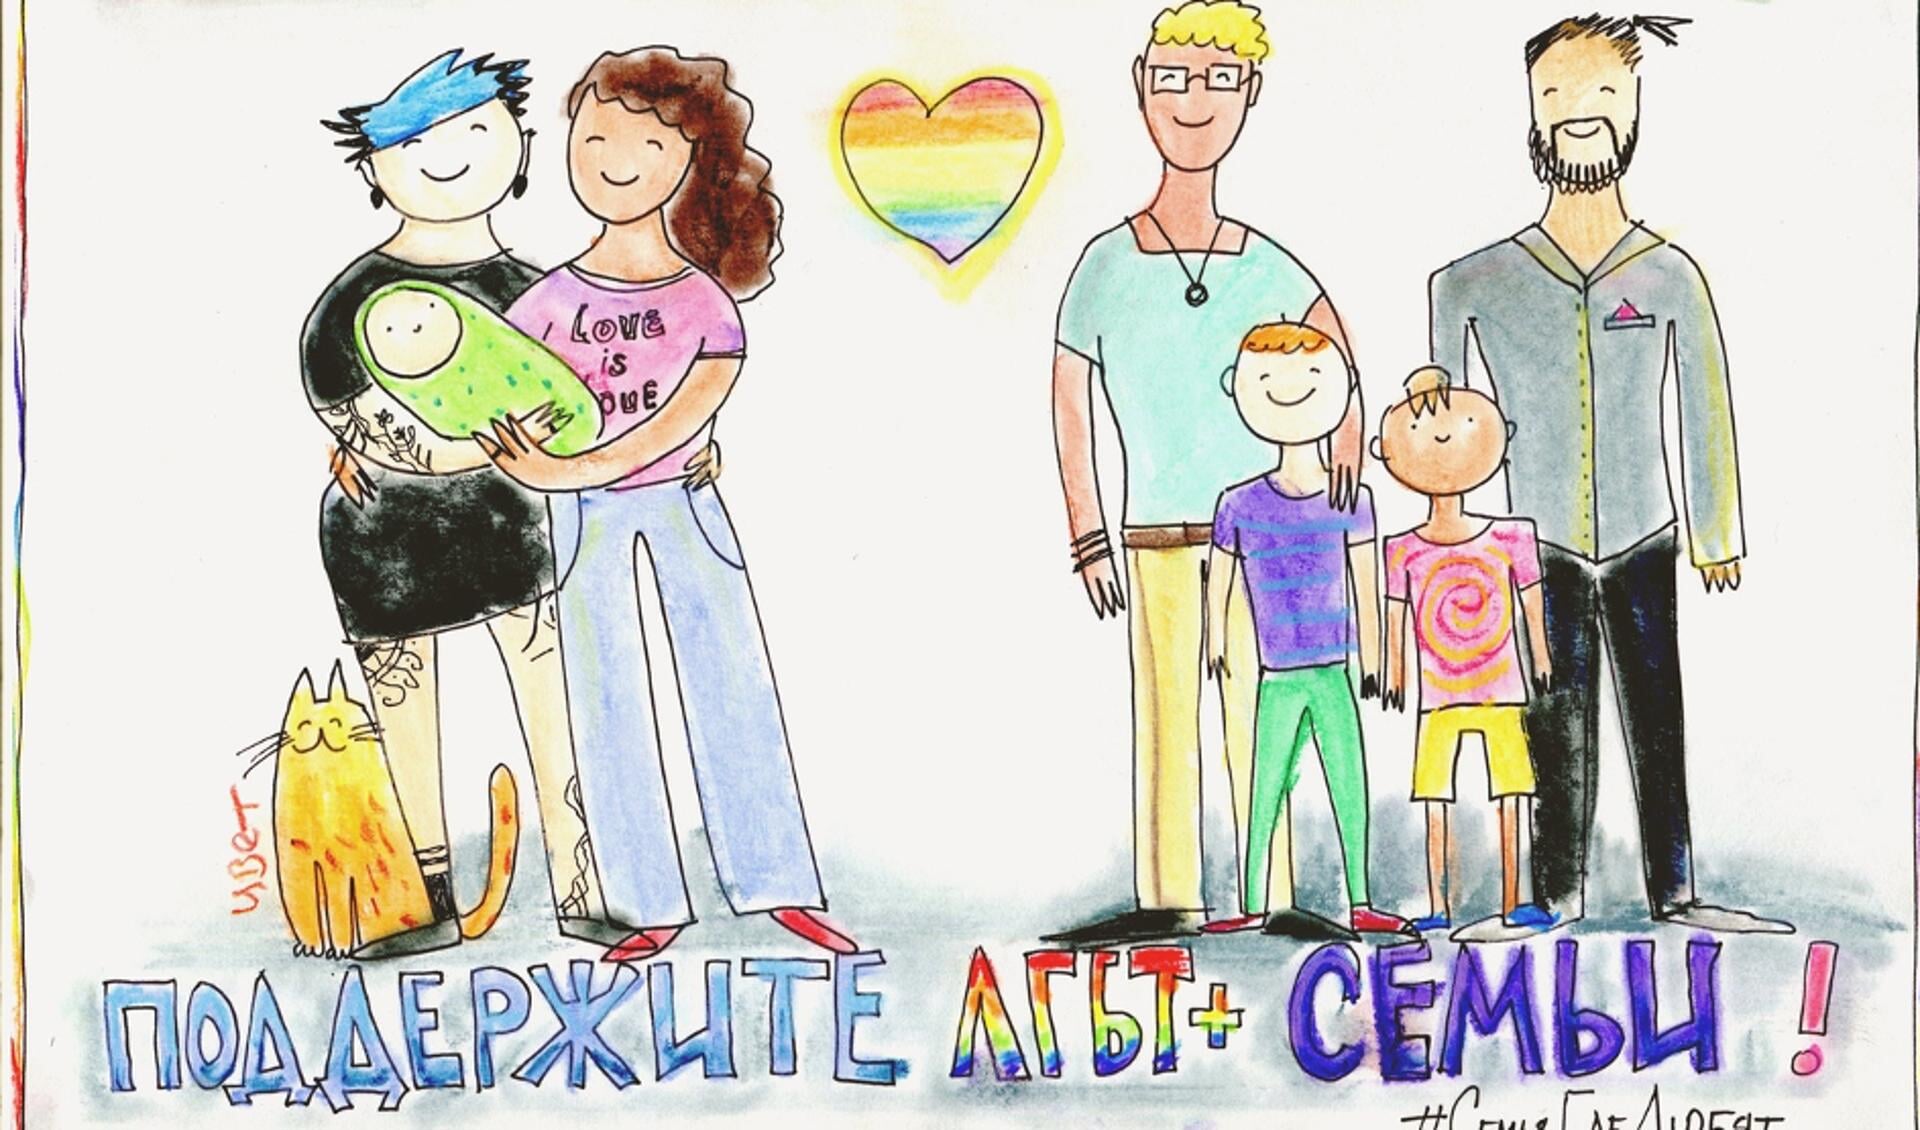 Yulia Tsvetkova wordt o.a. beschuldigd van 'homopropaganda' vanwege deze tekening met de titel: 'Het gezin is waar liefde is. Steun LHBTI+-gezinnen’.